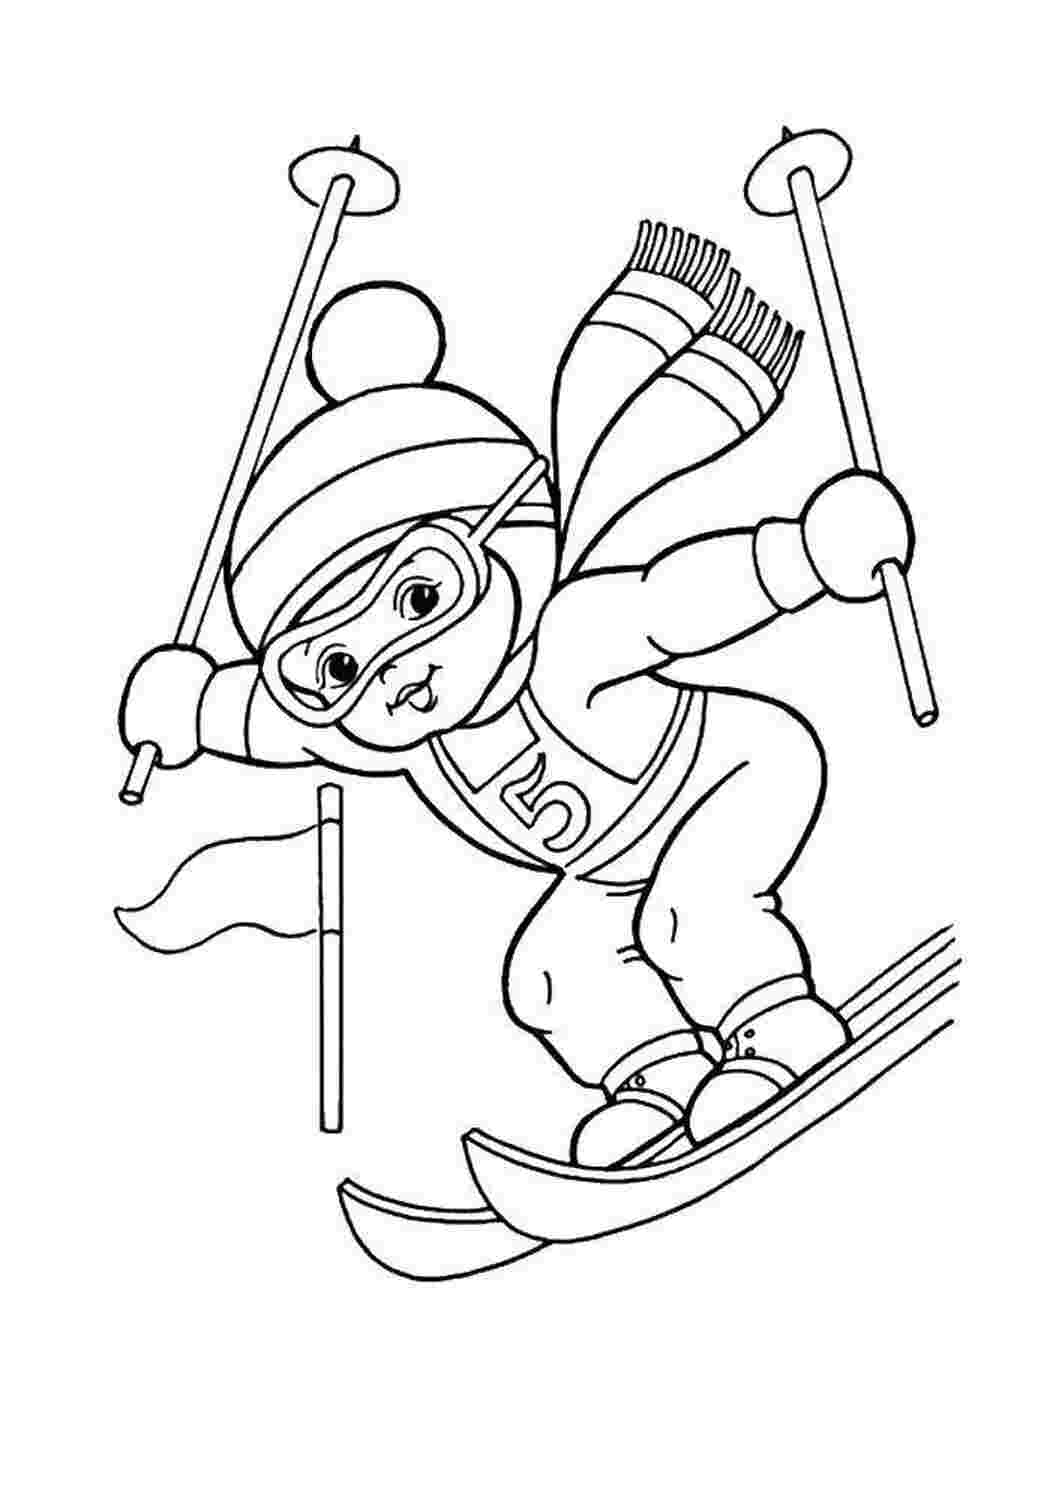 Лыжник рисунок: векторные изображения и иллюстрации, которые можно скачать бесплатно | Freepik